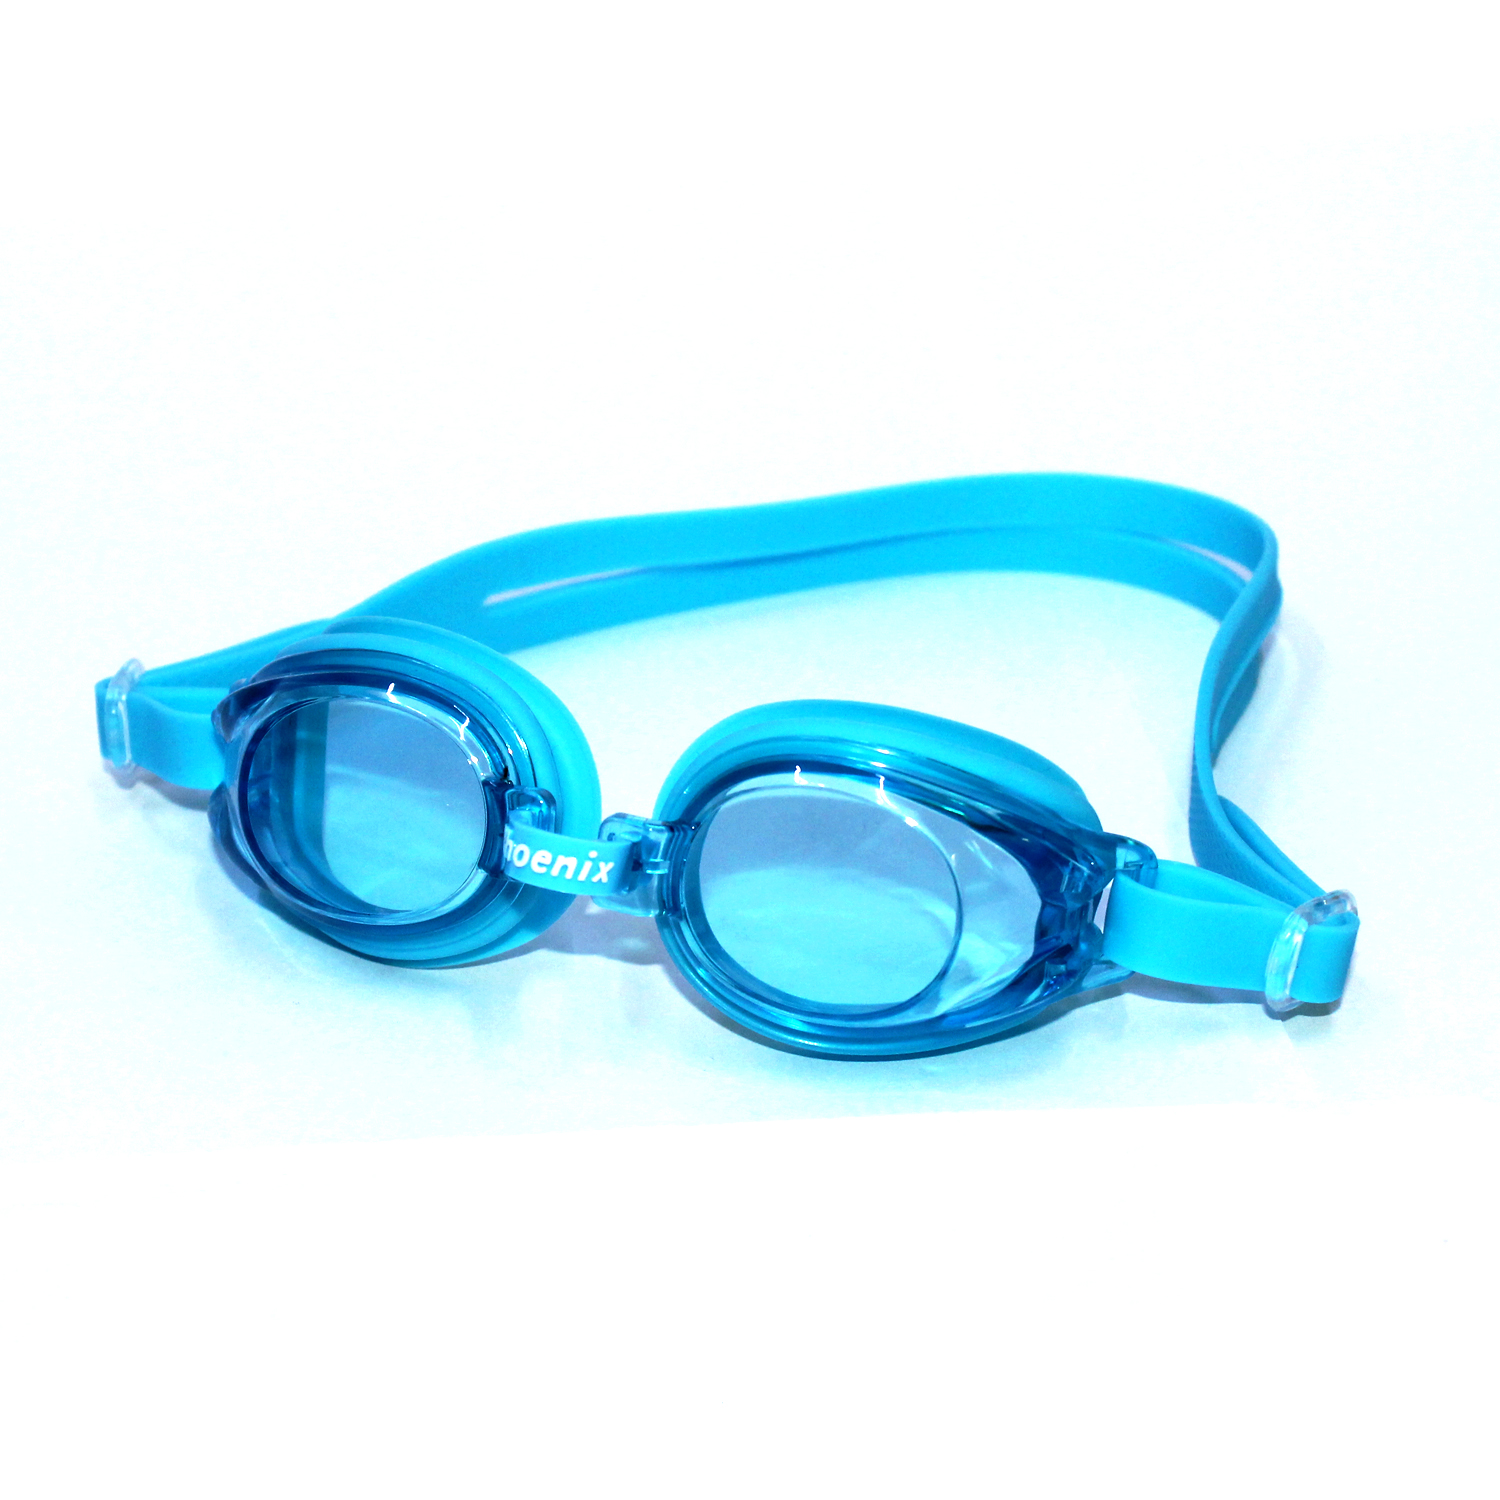 Kính bơi Phoenix trẻ em PN507 màu xanh P507-Blue